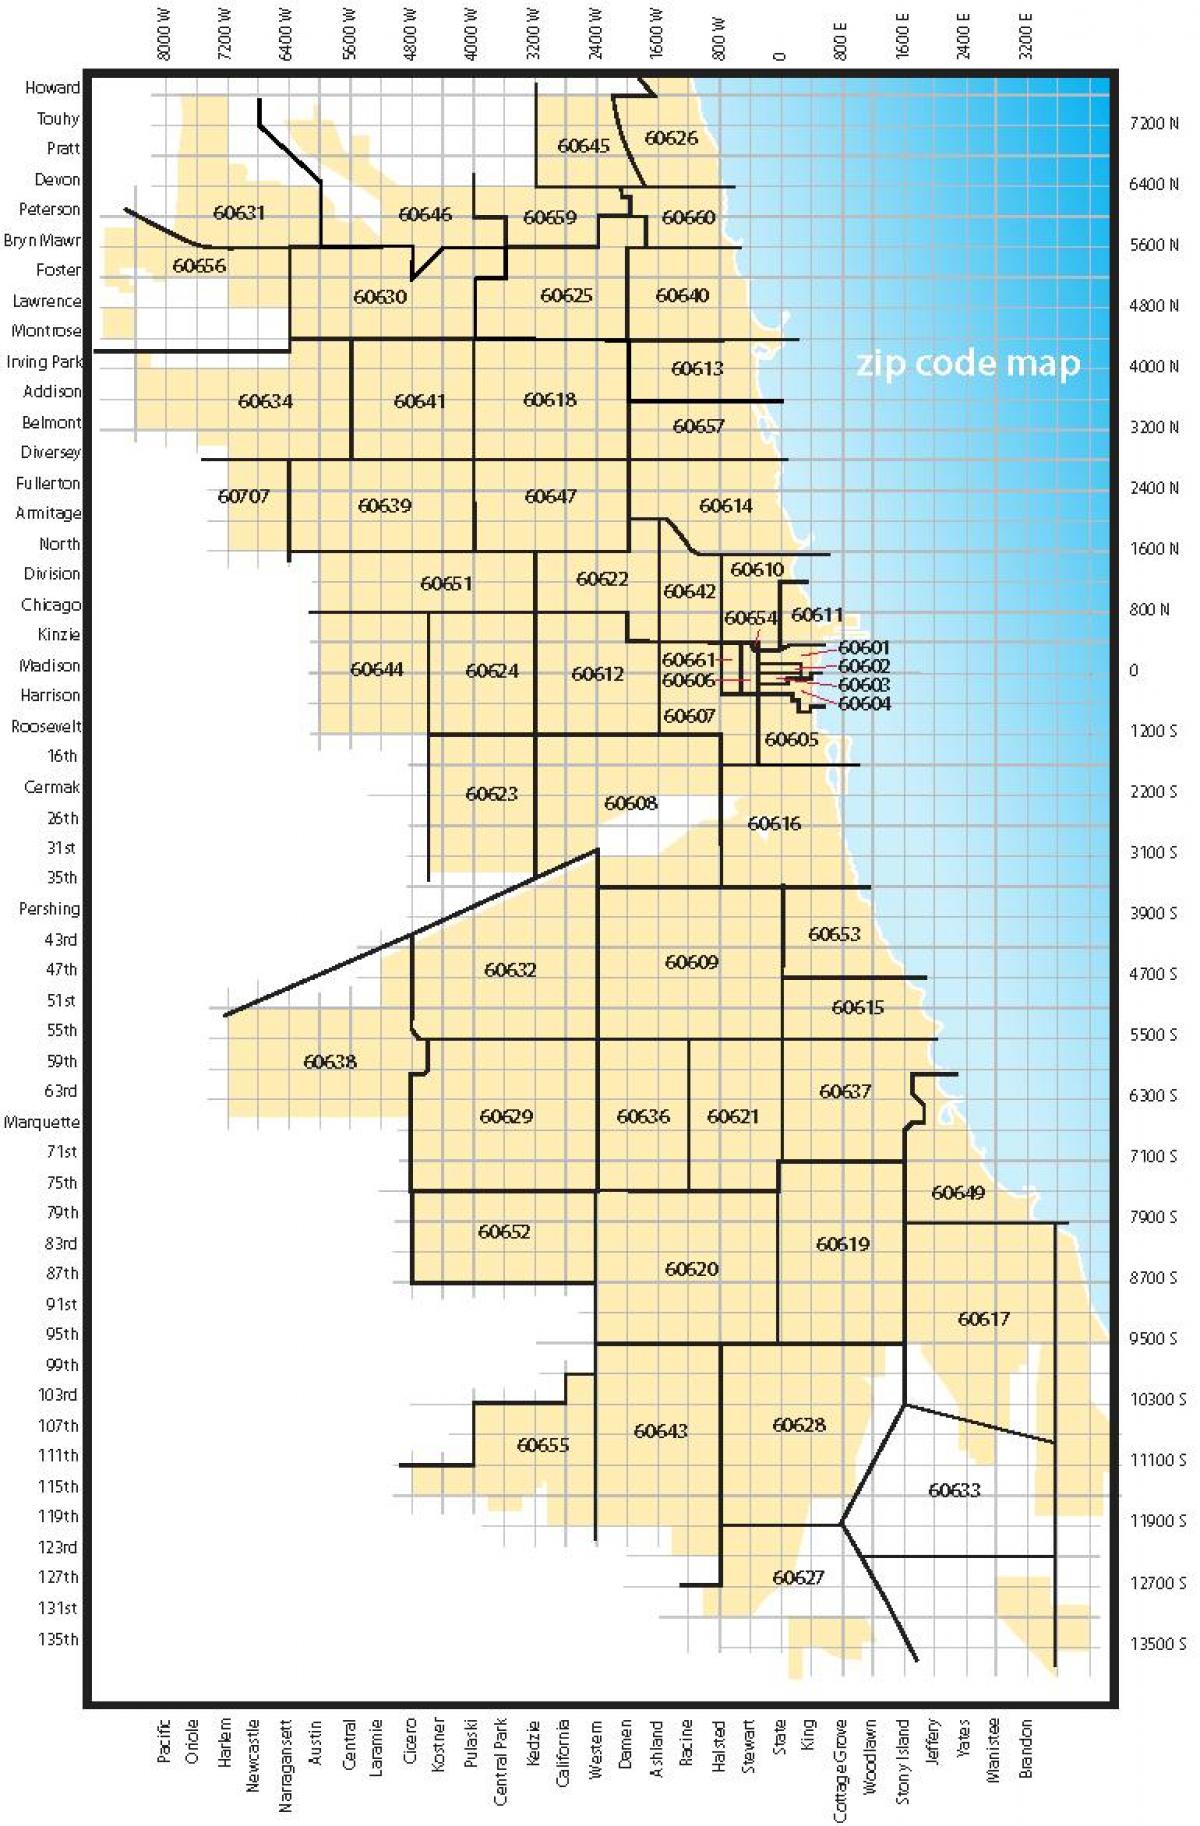 Khu vực Chicago mã bản đồ